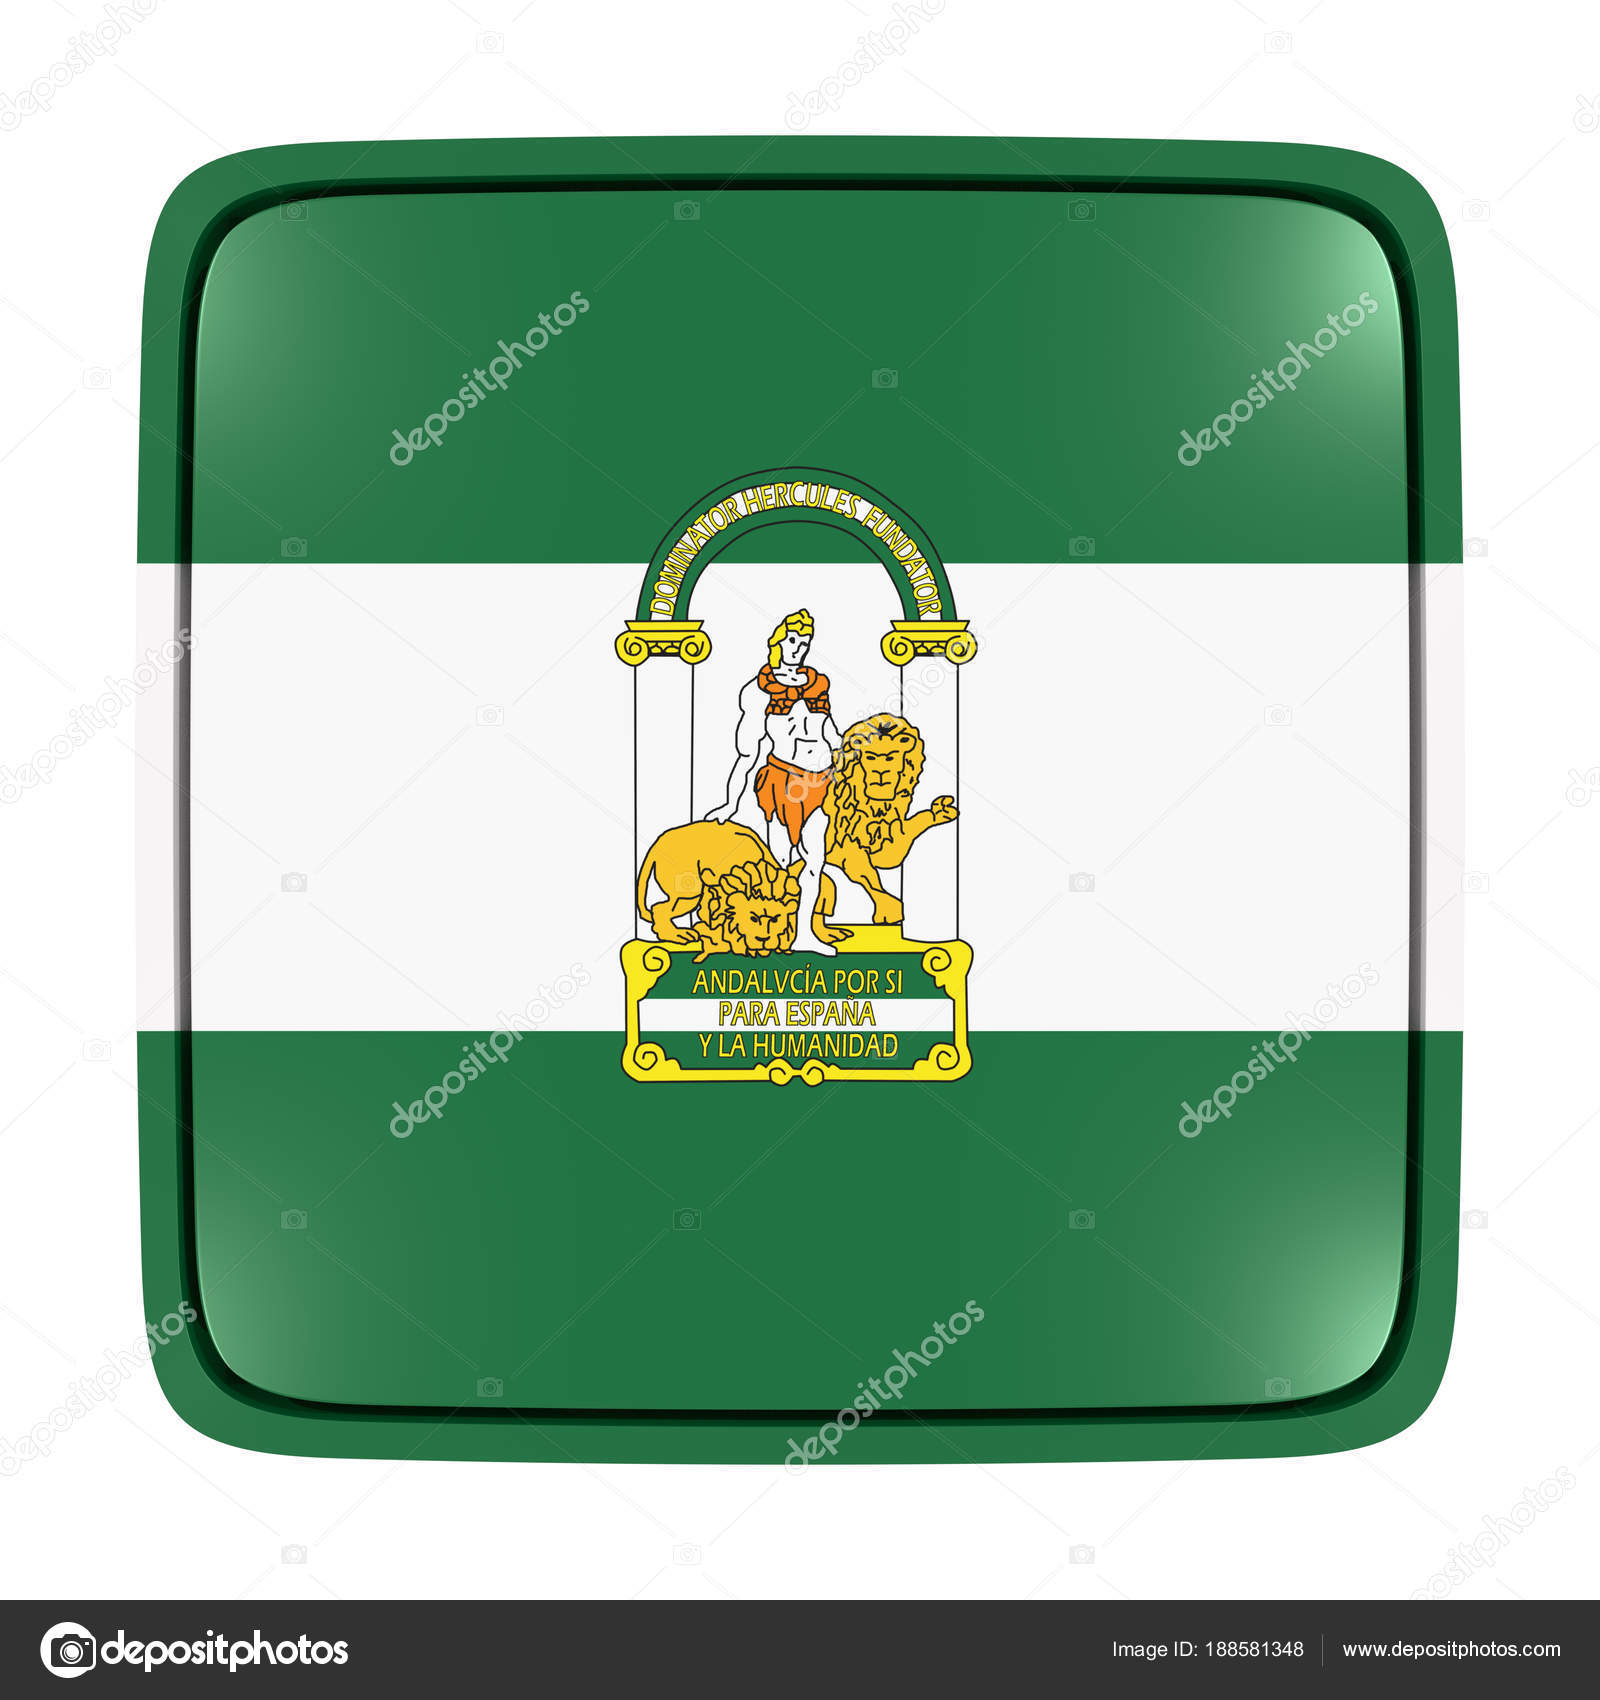 Bandera de Andalucía icono Ilustración de stock de ©erllre #188581348